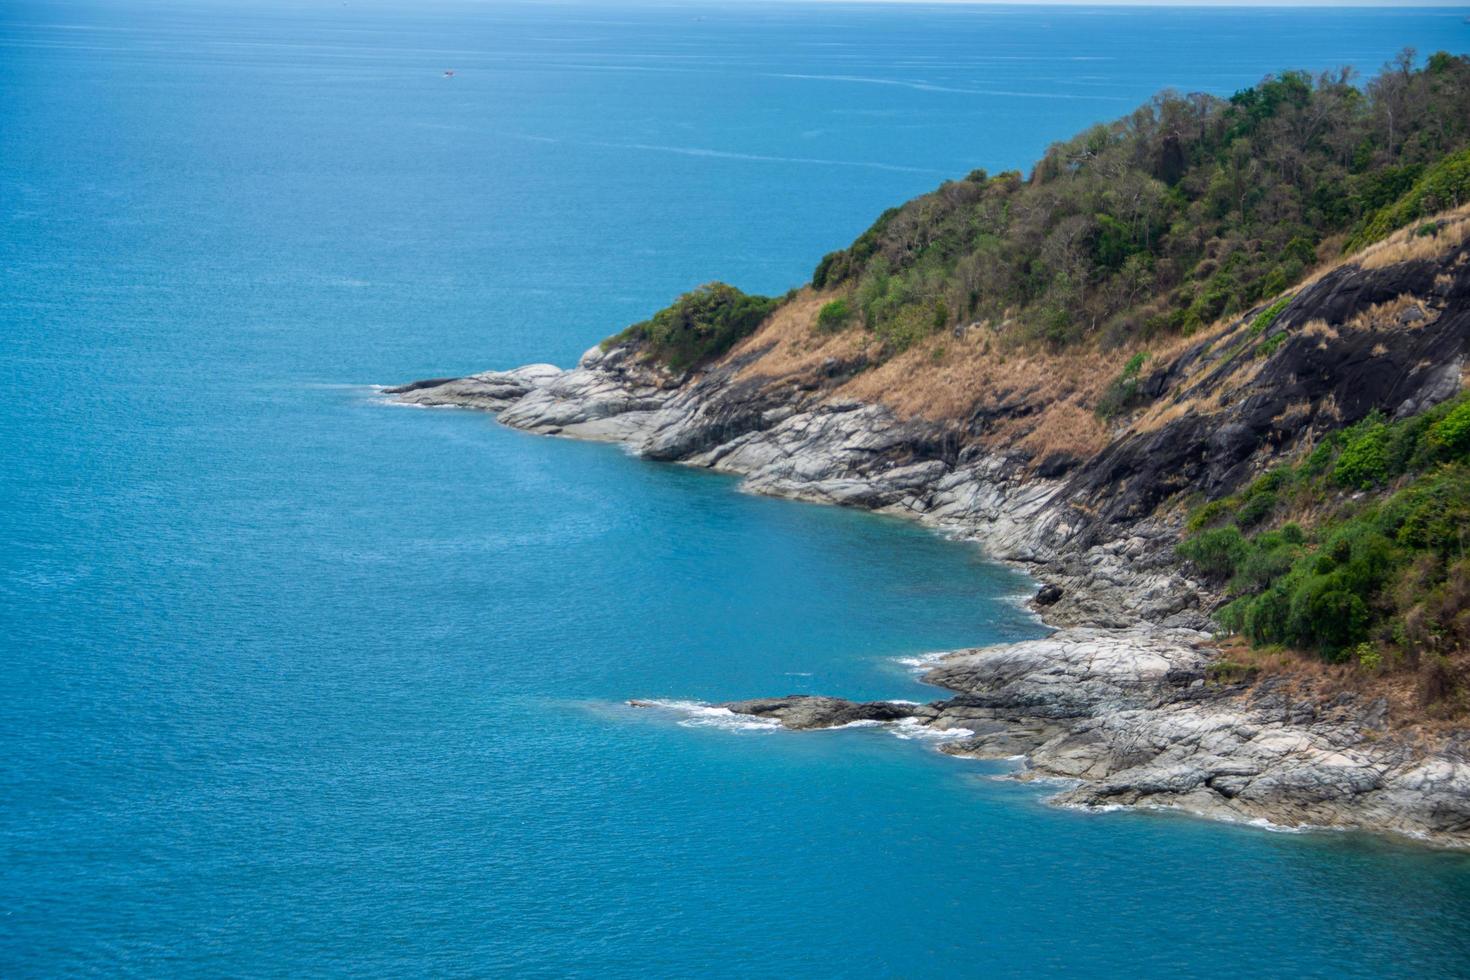 Phuket-uitkijkpunt en eiland met blauwe lucht. onderwerp is wazig. foto